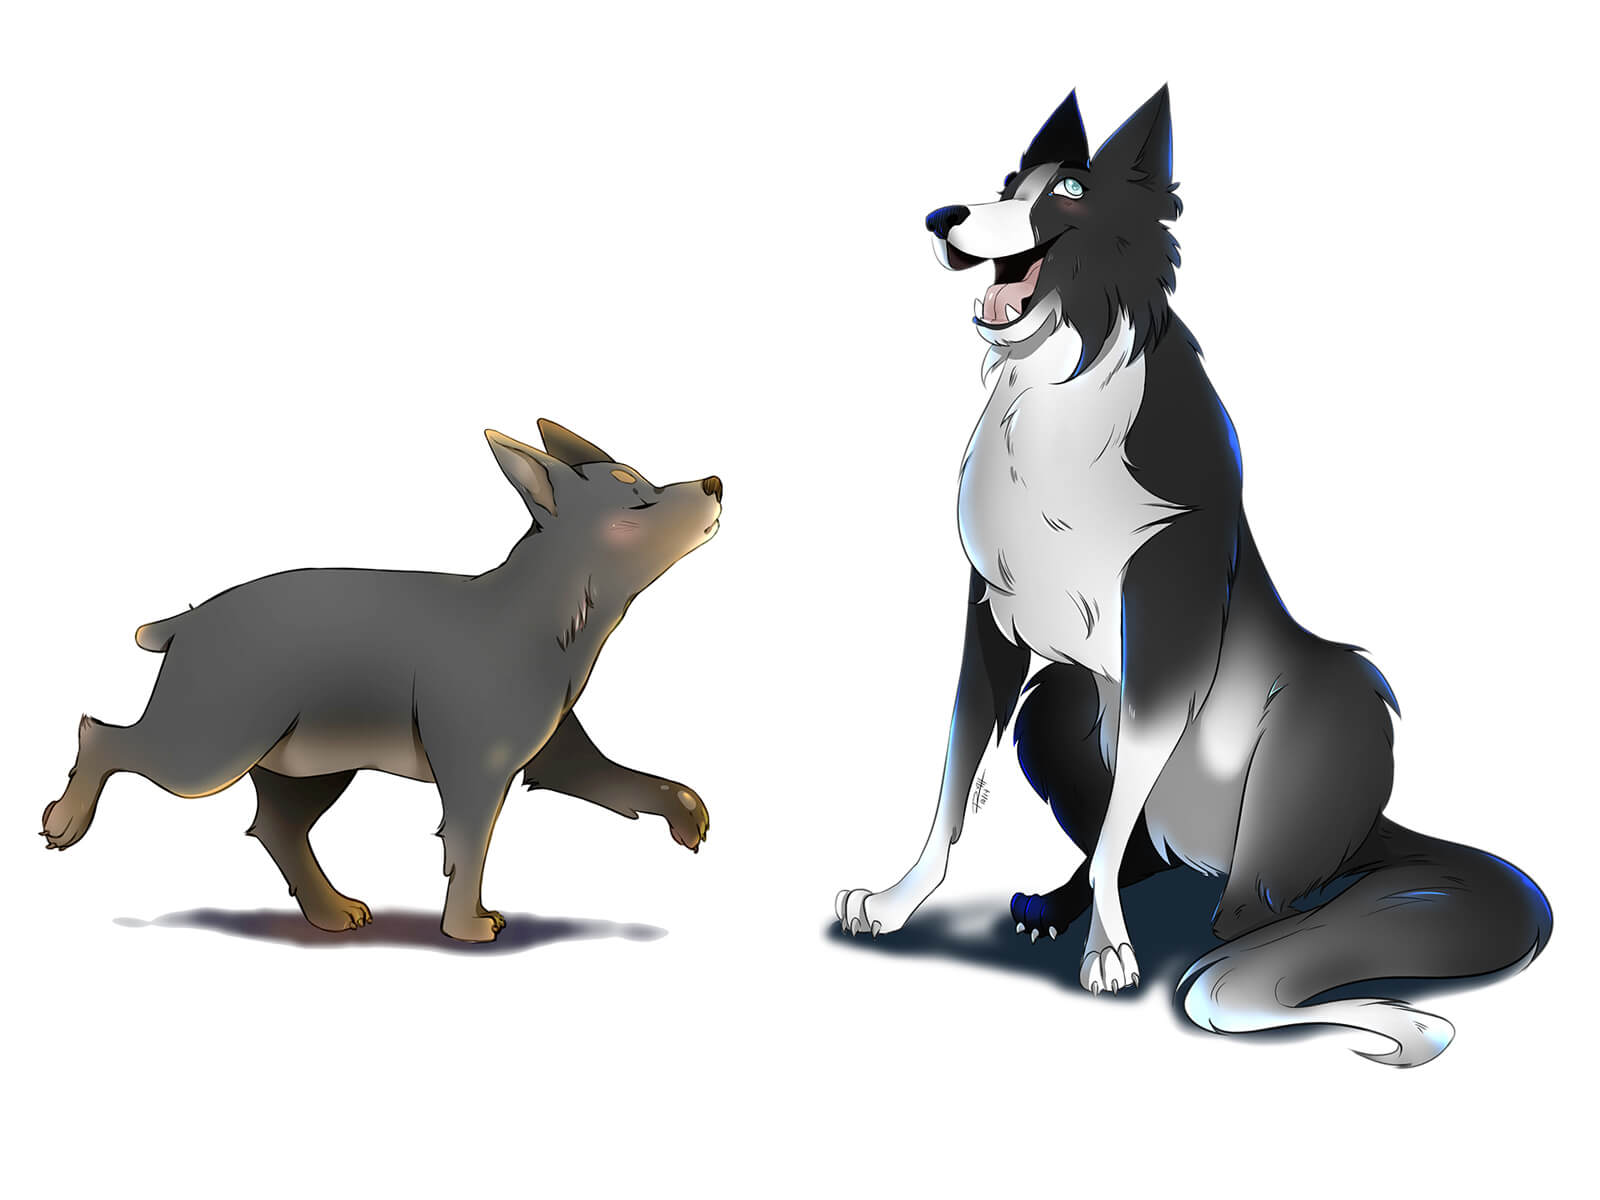 Pintura digital de dos perros de dibujos animados, un perro marrón trotando distante y un perro blanco y negro felizmente sentado.